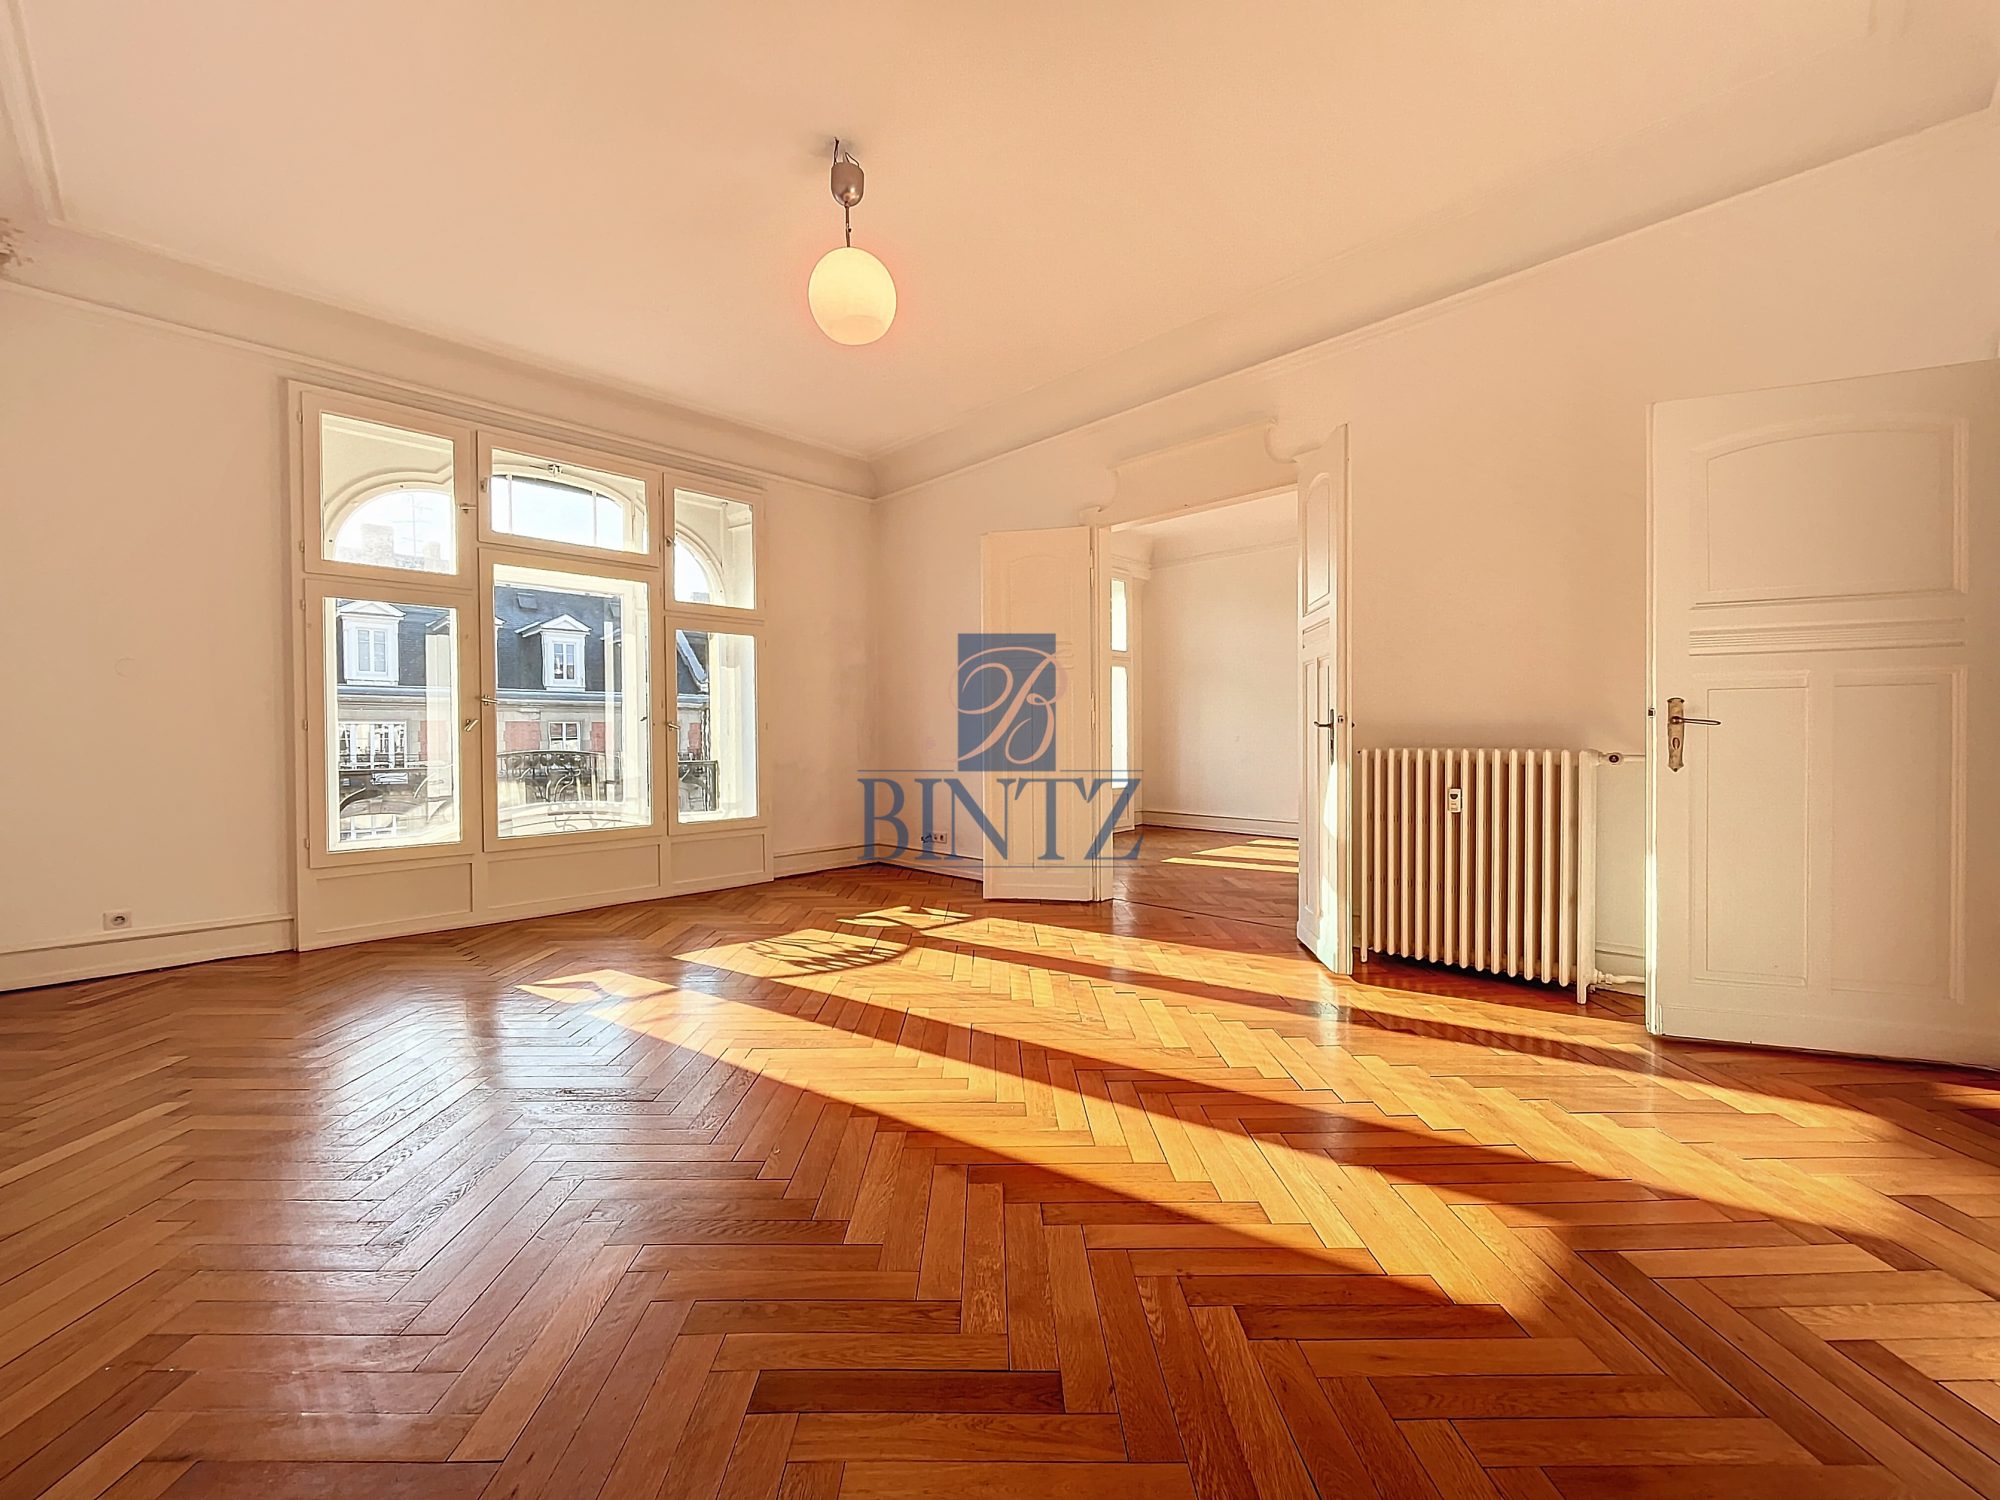 Exceptionnel 5 pièces avec balcon - location appartement Strasbourg - Bintz Immobilier - 1